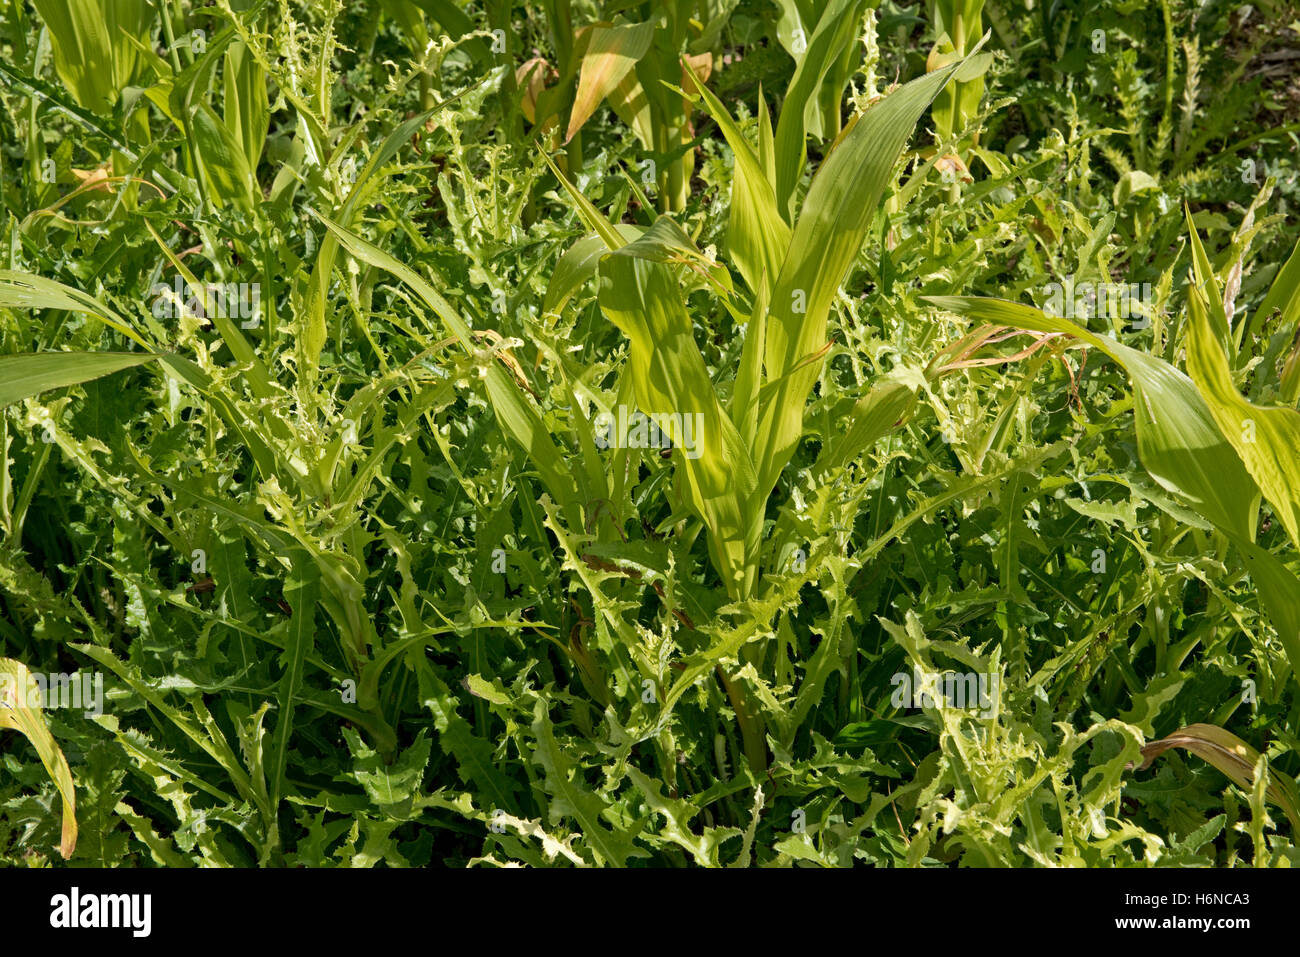 Stachelige Sau-Distel, Sonchus Asper, Unkraut in einem jungen Mais oder Mais Ernte auf steinigen Kreide Boden, August Stockfoto